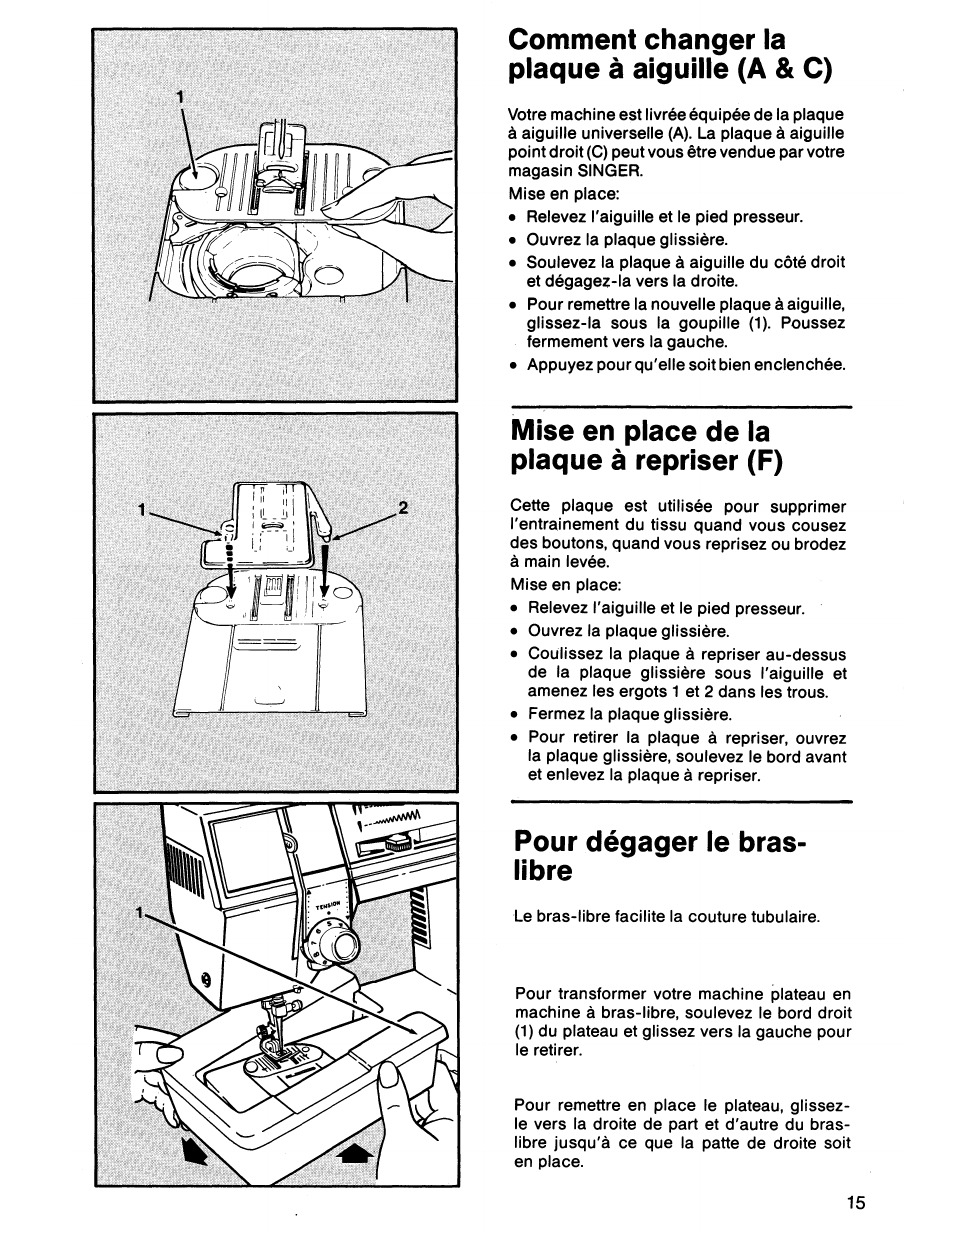 Comment changer la plaque à aiguille (a & c), Mise en place de la plaque à repriser (f), Pour dégager le bras- libre | SINGER 7011 User Manual | Page 17 / 78